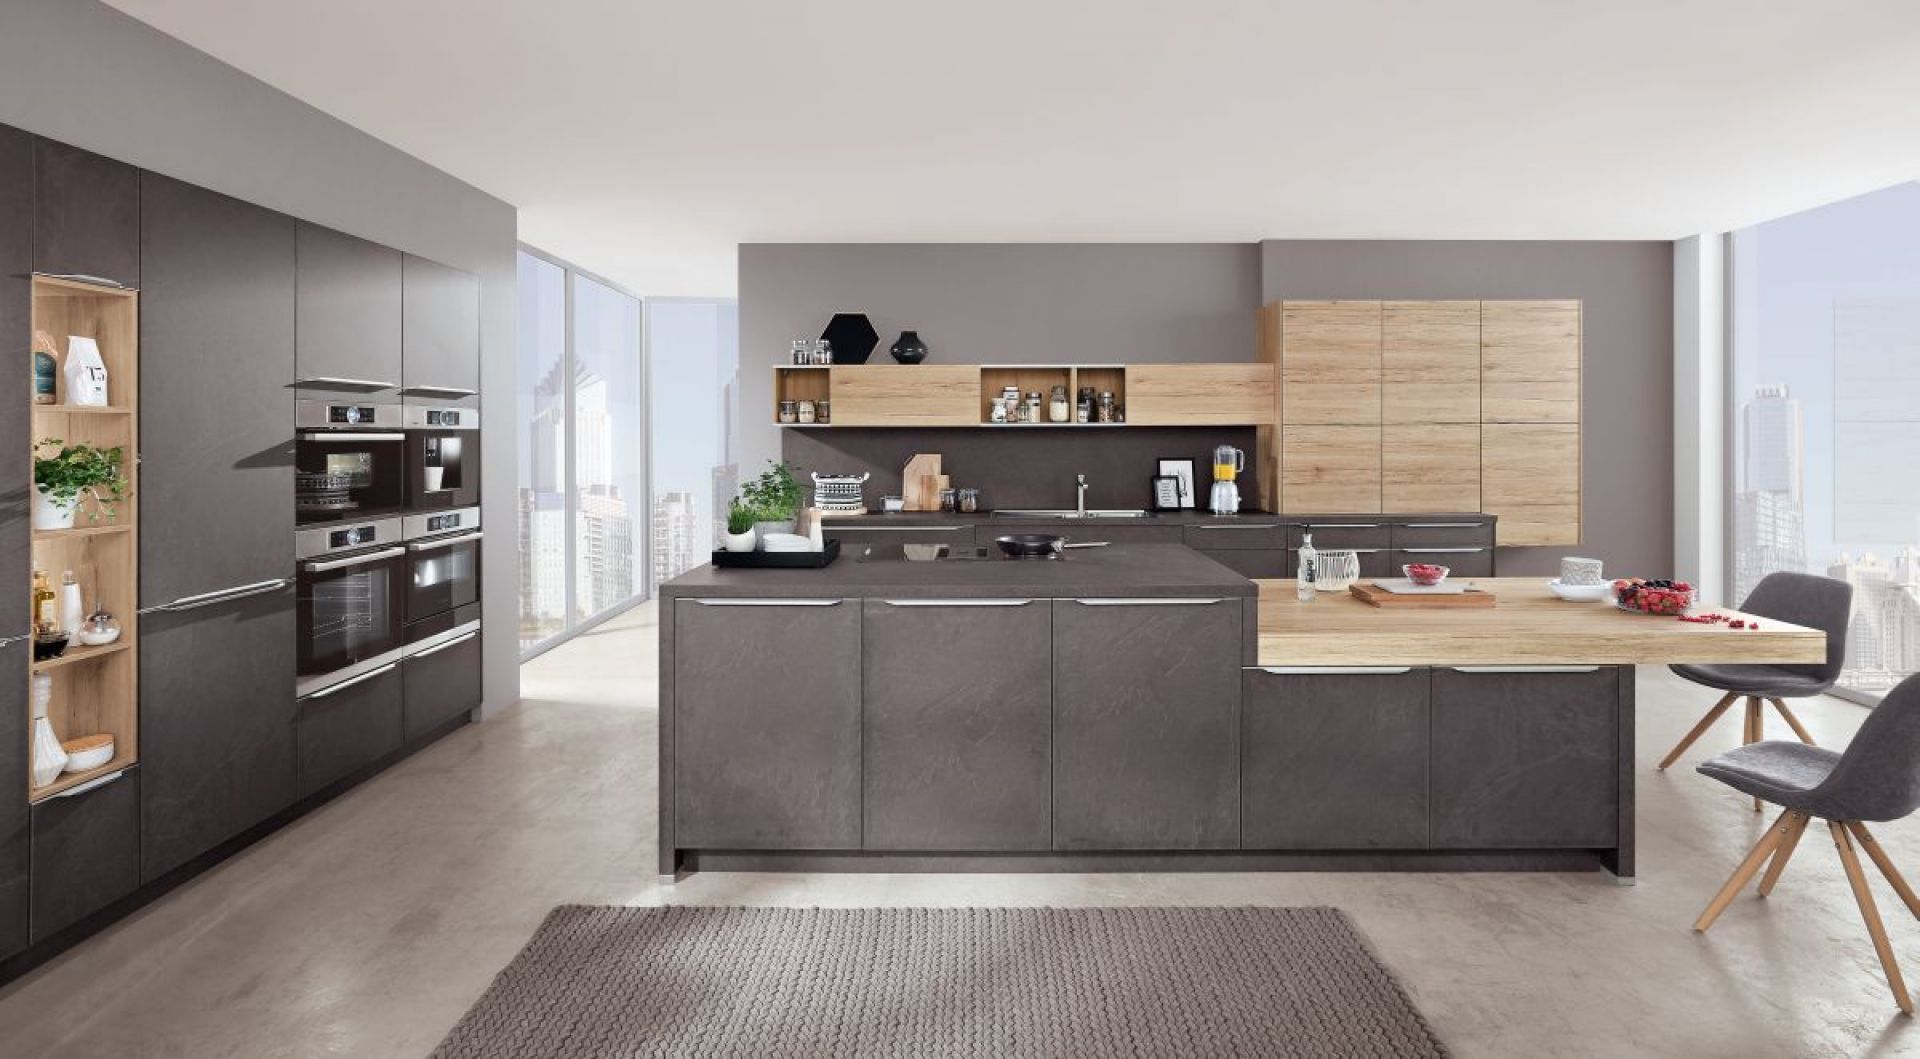 Wyższe szafki dolne pozwalaja stworzyć bardziej komfortową i przyjazną przestrzeń w kuchni.  Fot. Verle Küchen